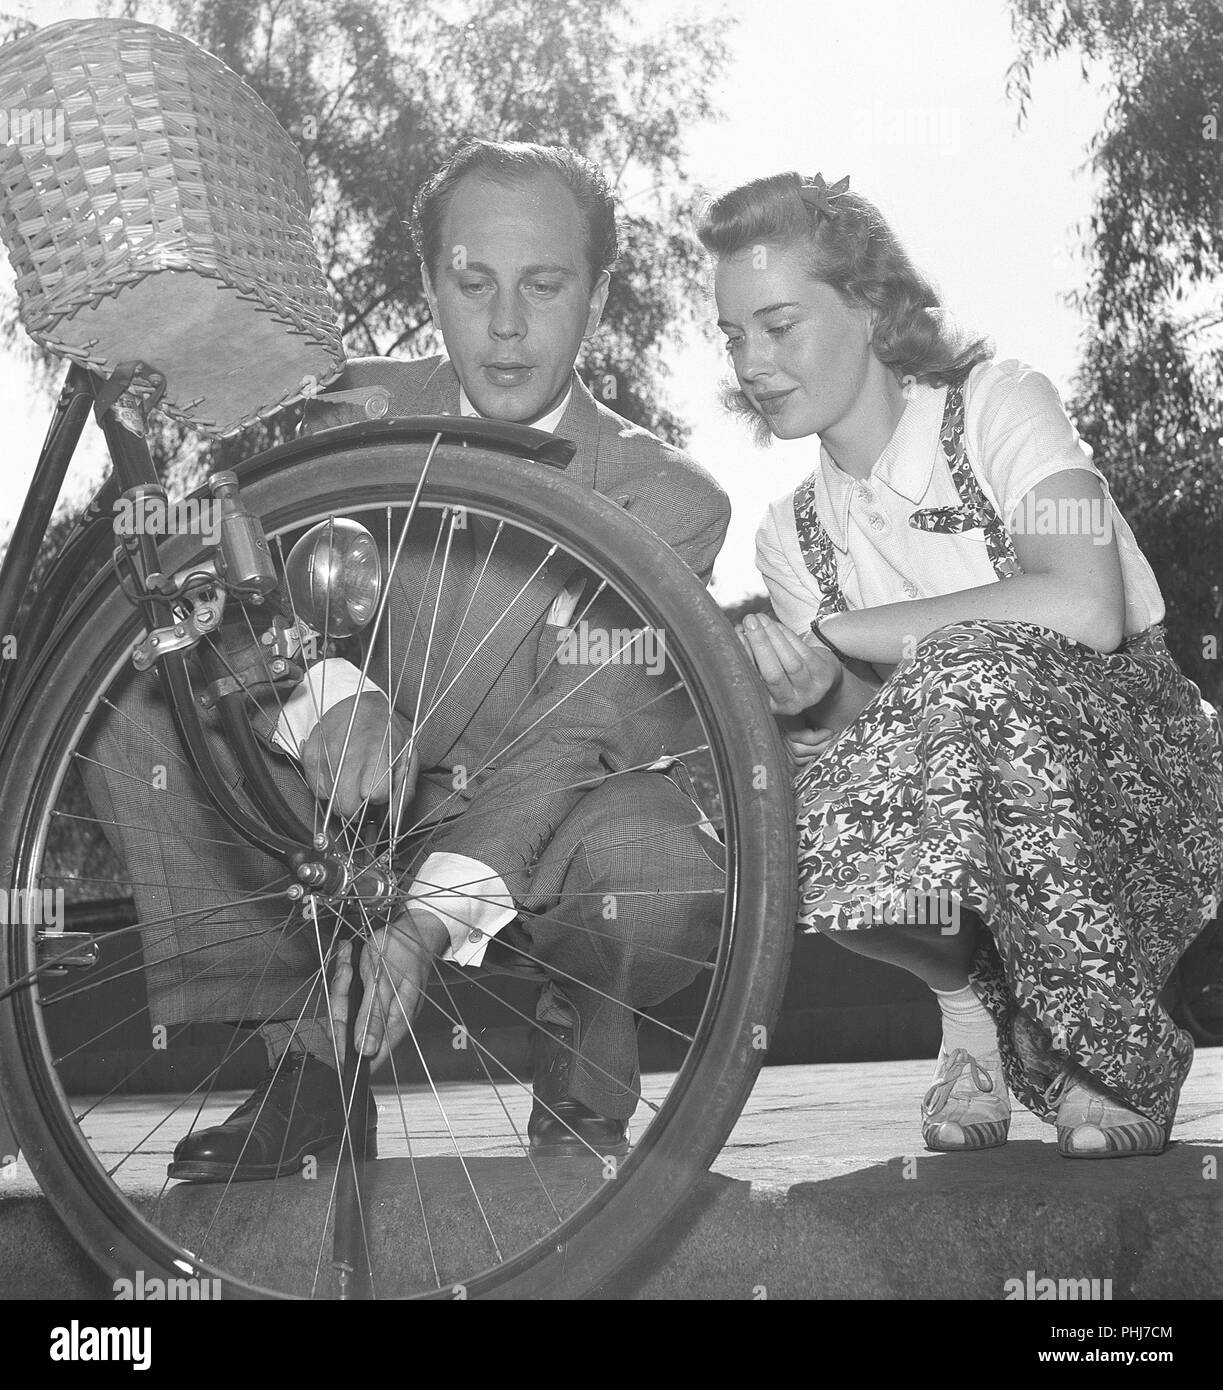 1940s giovane con una bicicletta. Attore Willy Peters è visto qui il pompaggio di aria nel pneumatico di una bicicletta womans mentre lei è seduta accanto a lui e alla ricerca. La Svezia 1940s. Foto Kristoffersson E50-3 Foto Stock